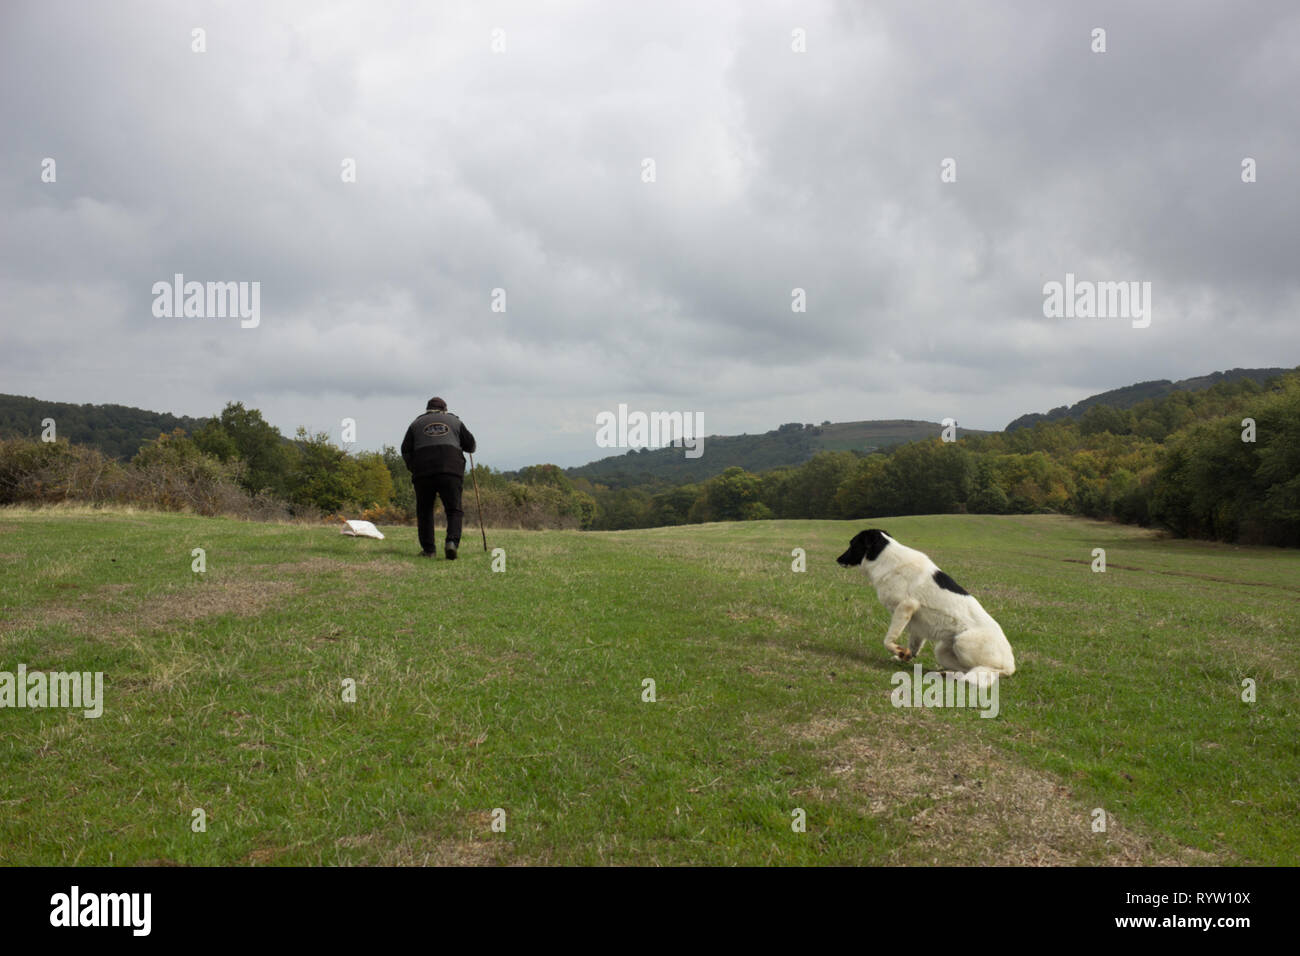 Pâtre grec promenades sur le terrain du pâturage et son chien se prépare à passer avec lui, Thermi Thessalonique, Grèce municipalité. Banque D'Images